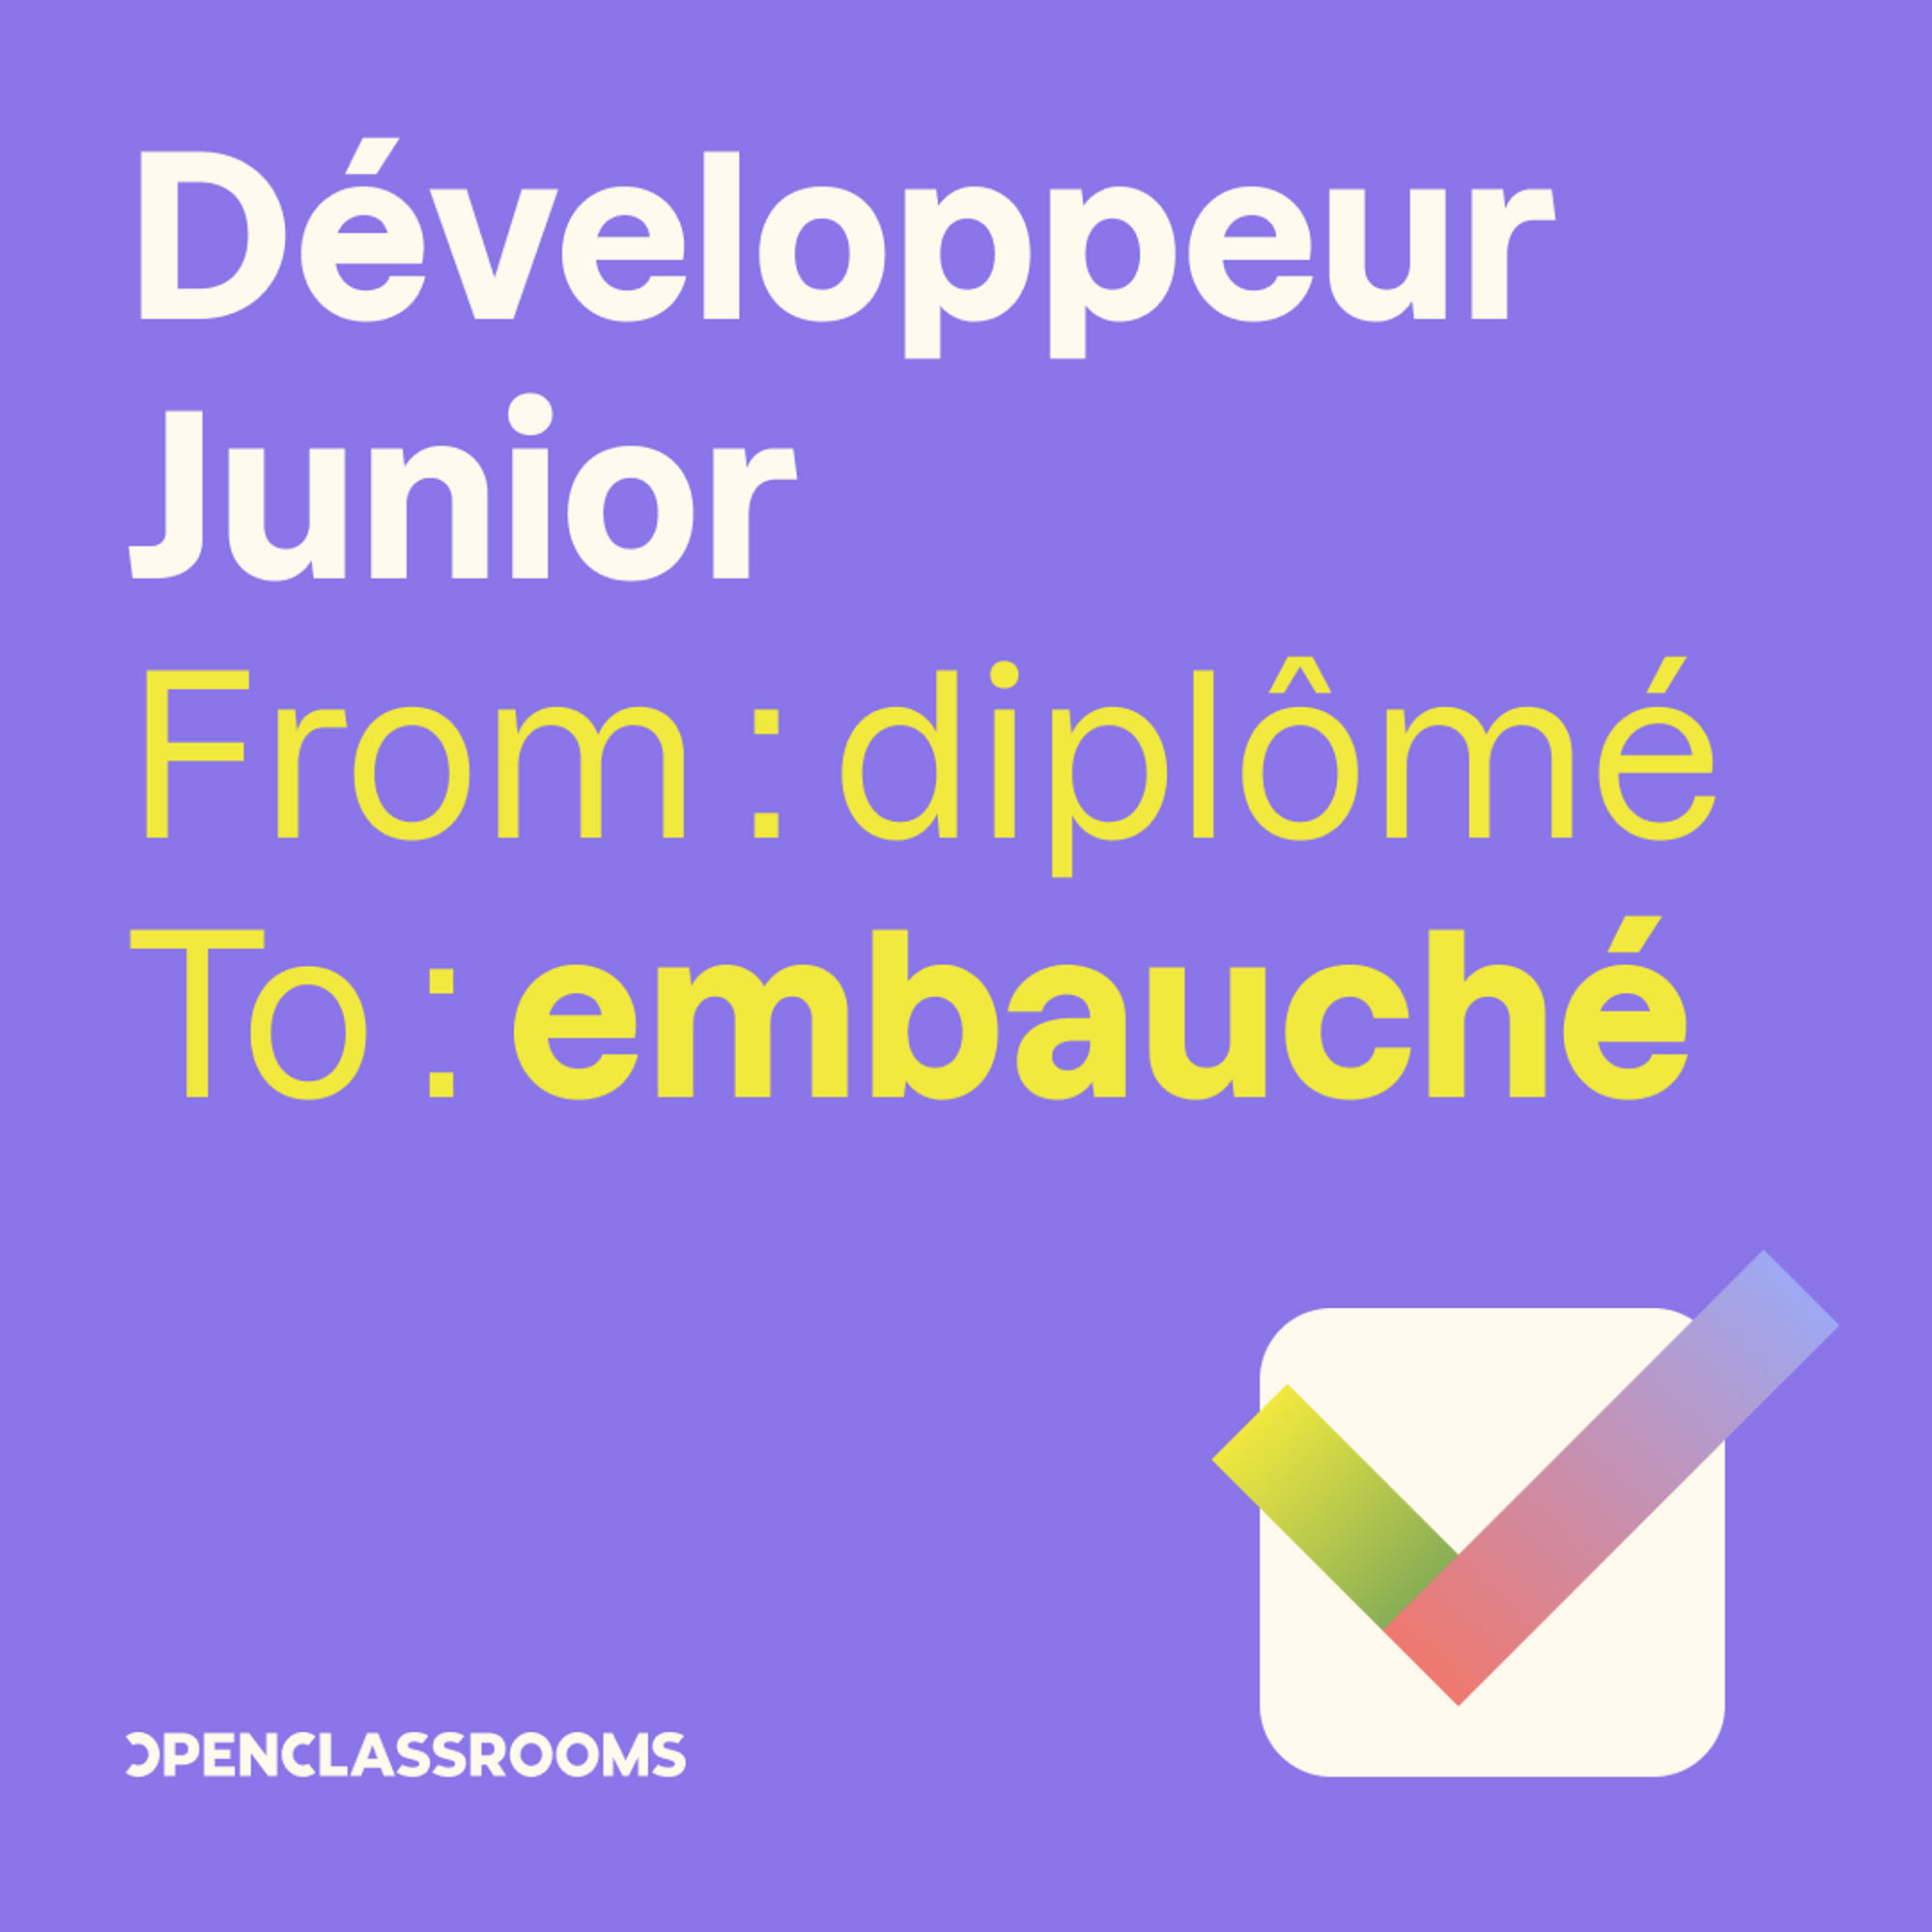 Développeur Junior, from diplômé to embauché. Ce message pourra illustrer votre post LinkedIn pour faire savoir que vous avez trouvé un job de développeur junior !